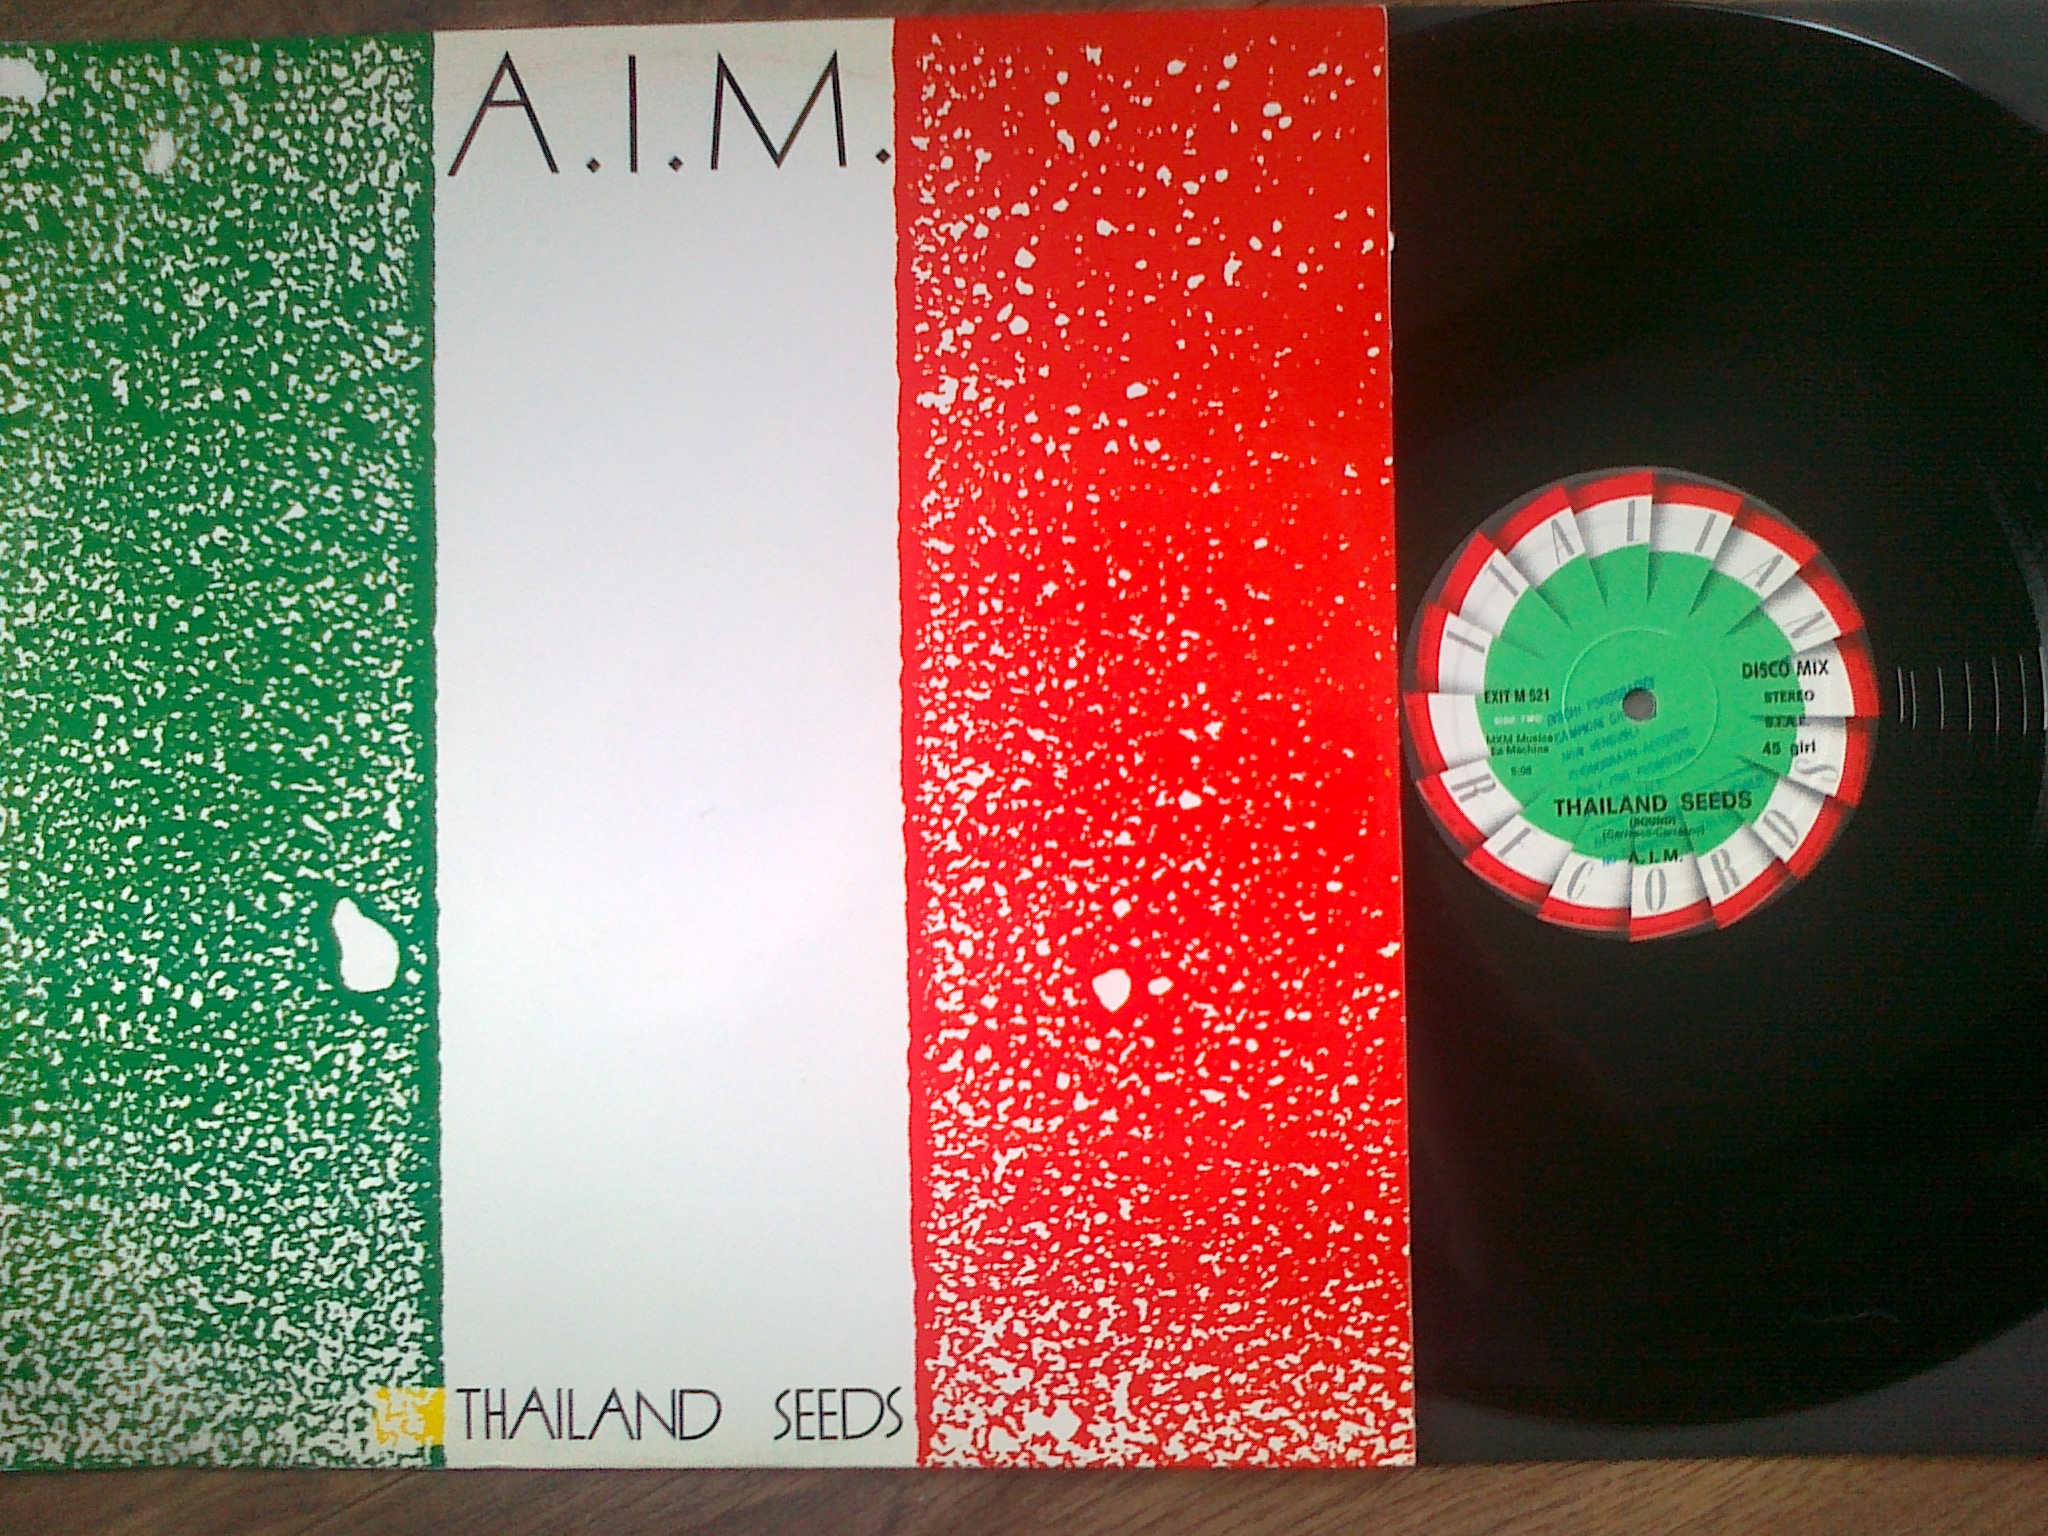 A.I.M. - Thailand Seeds